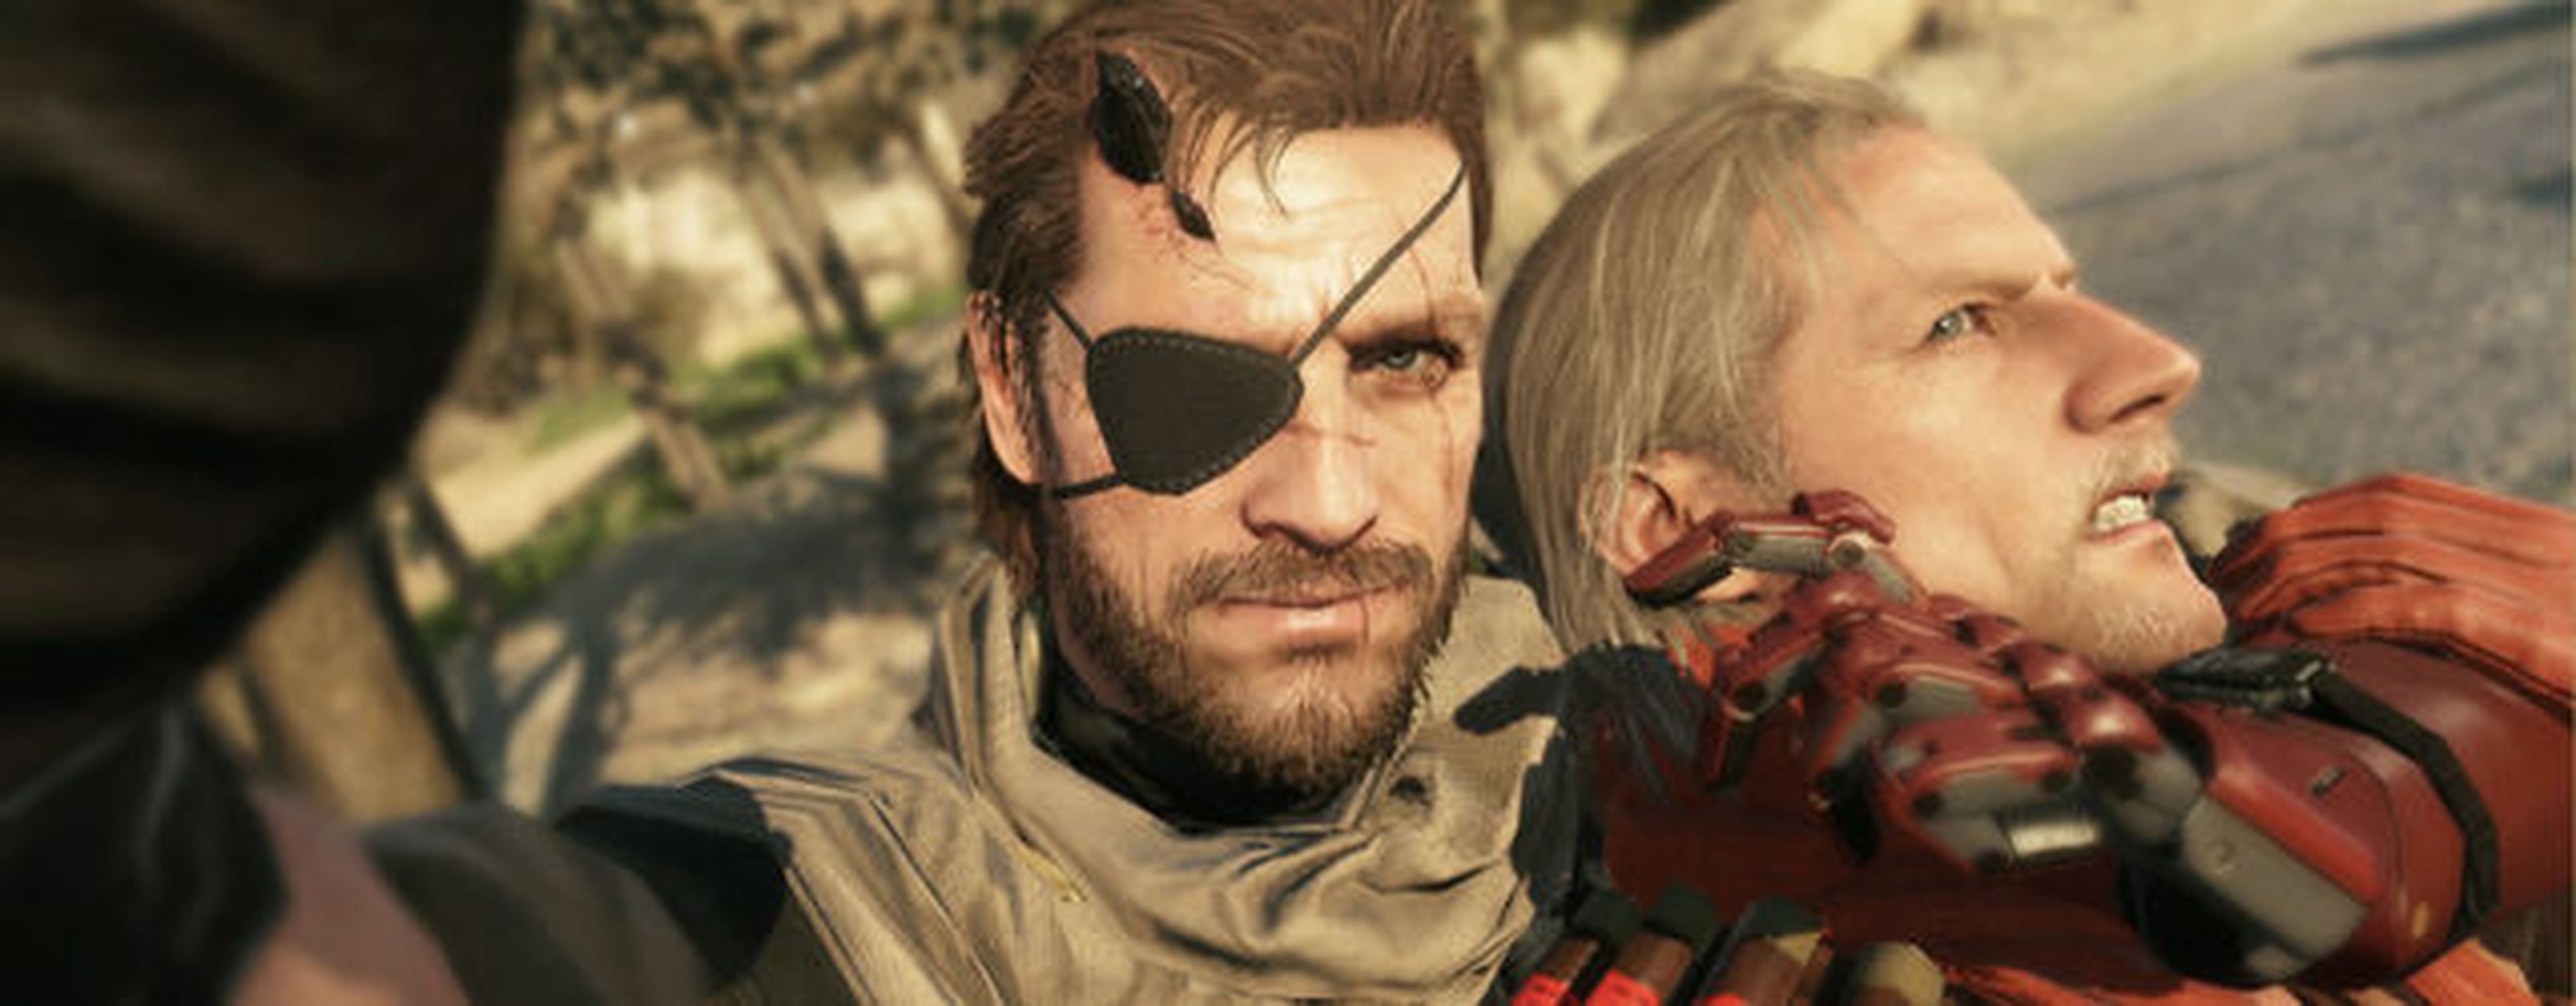 Metal Gear Solid V The Phantom Pain será el último de la saga